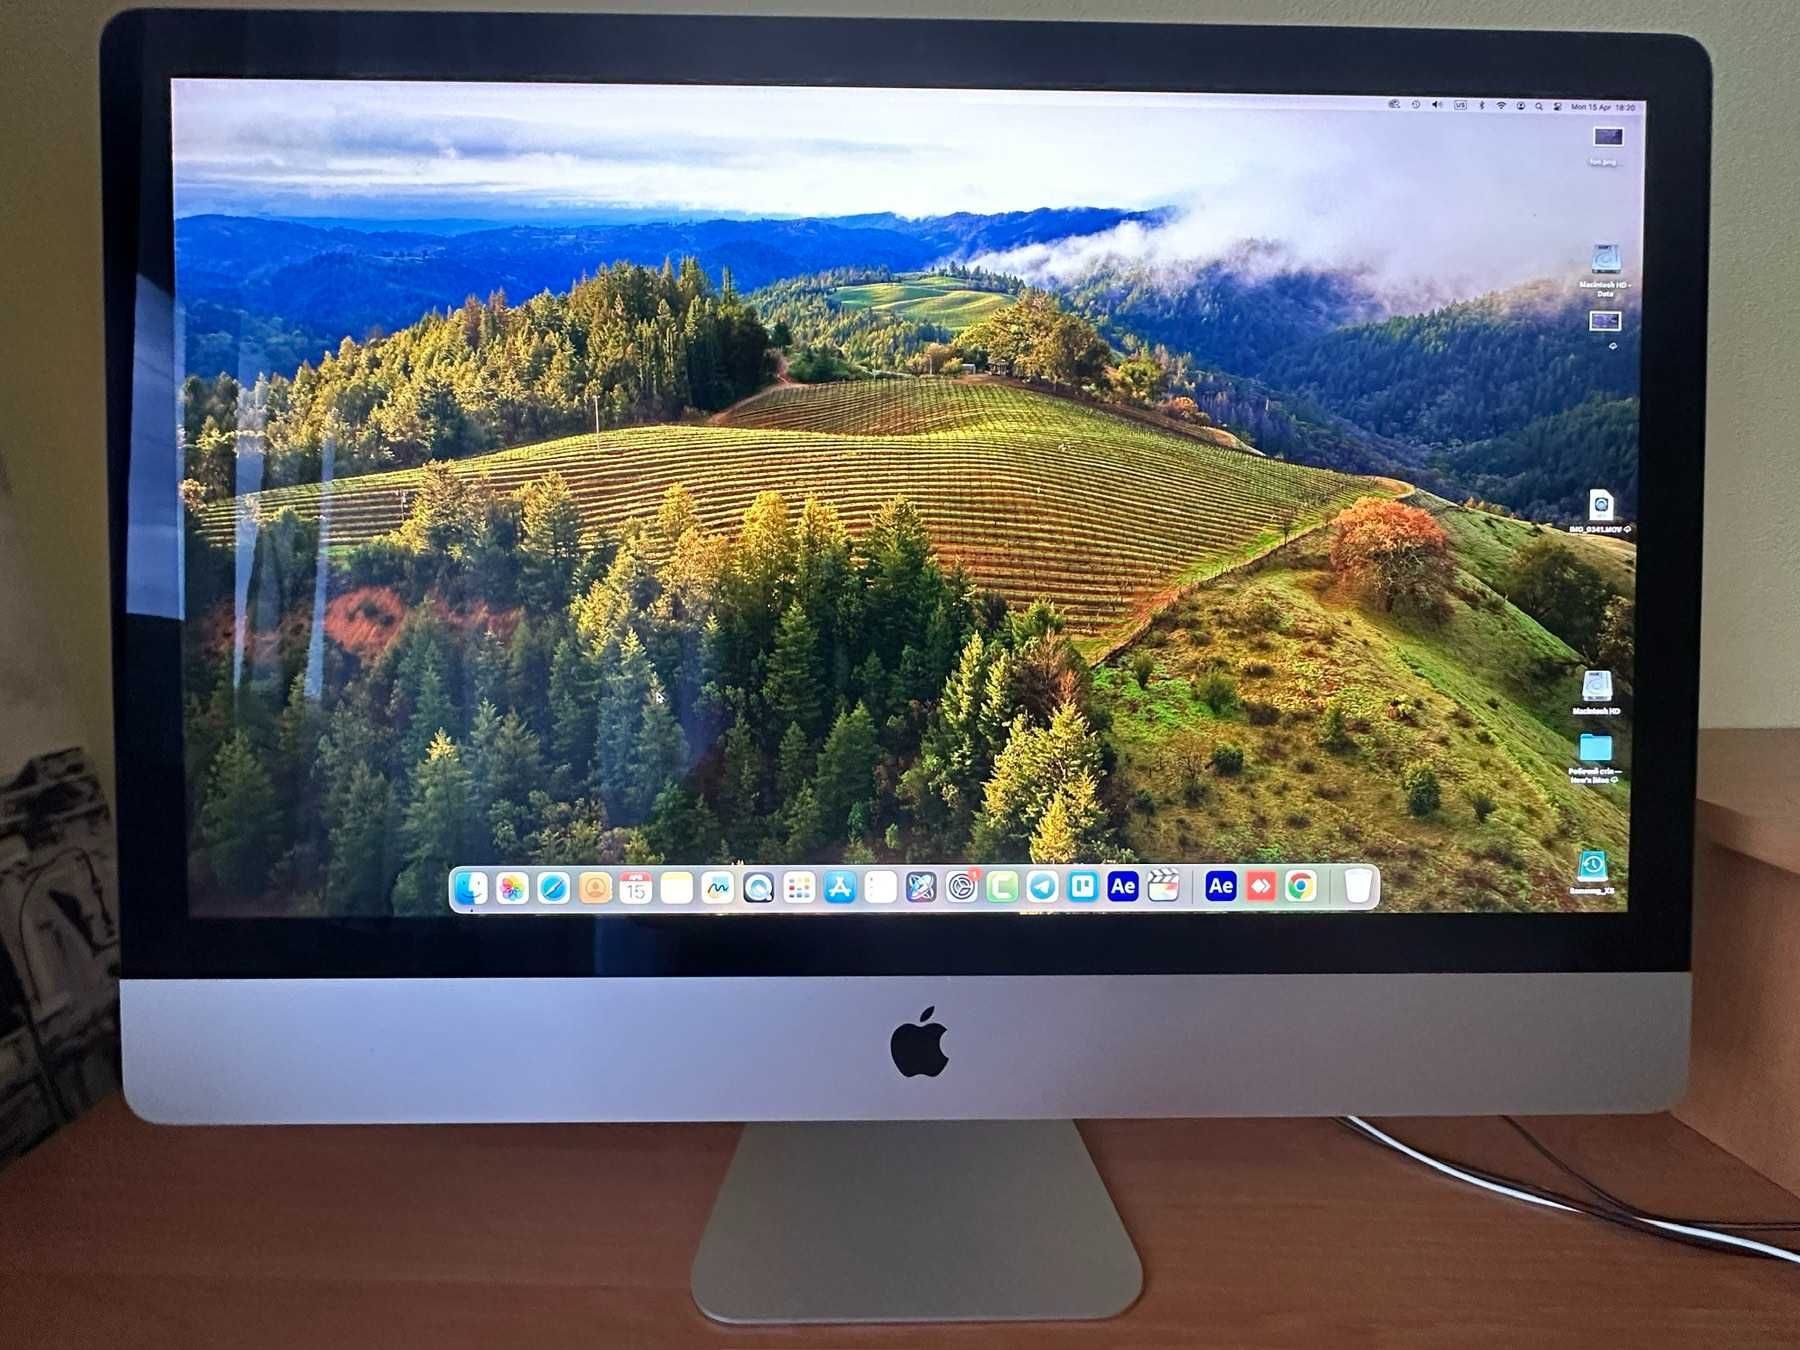 iMac Retina 5K, 27-inch, 2020